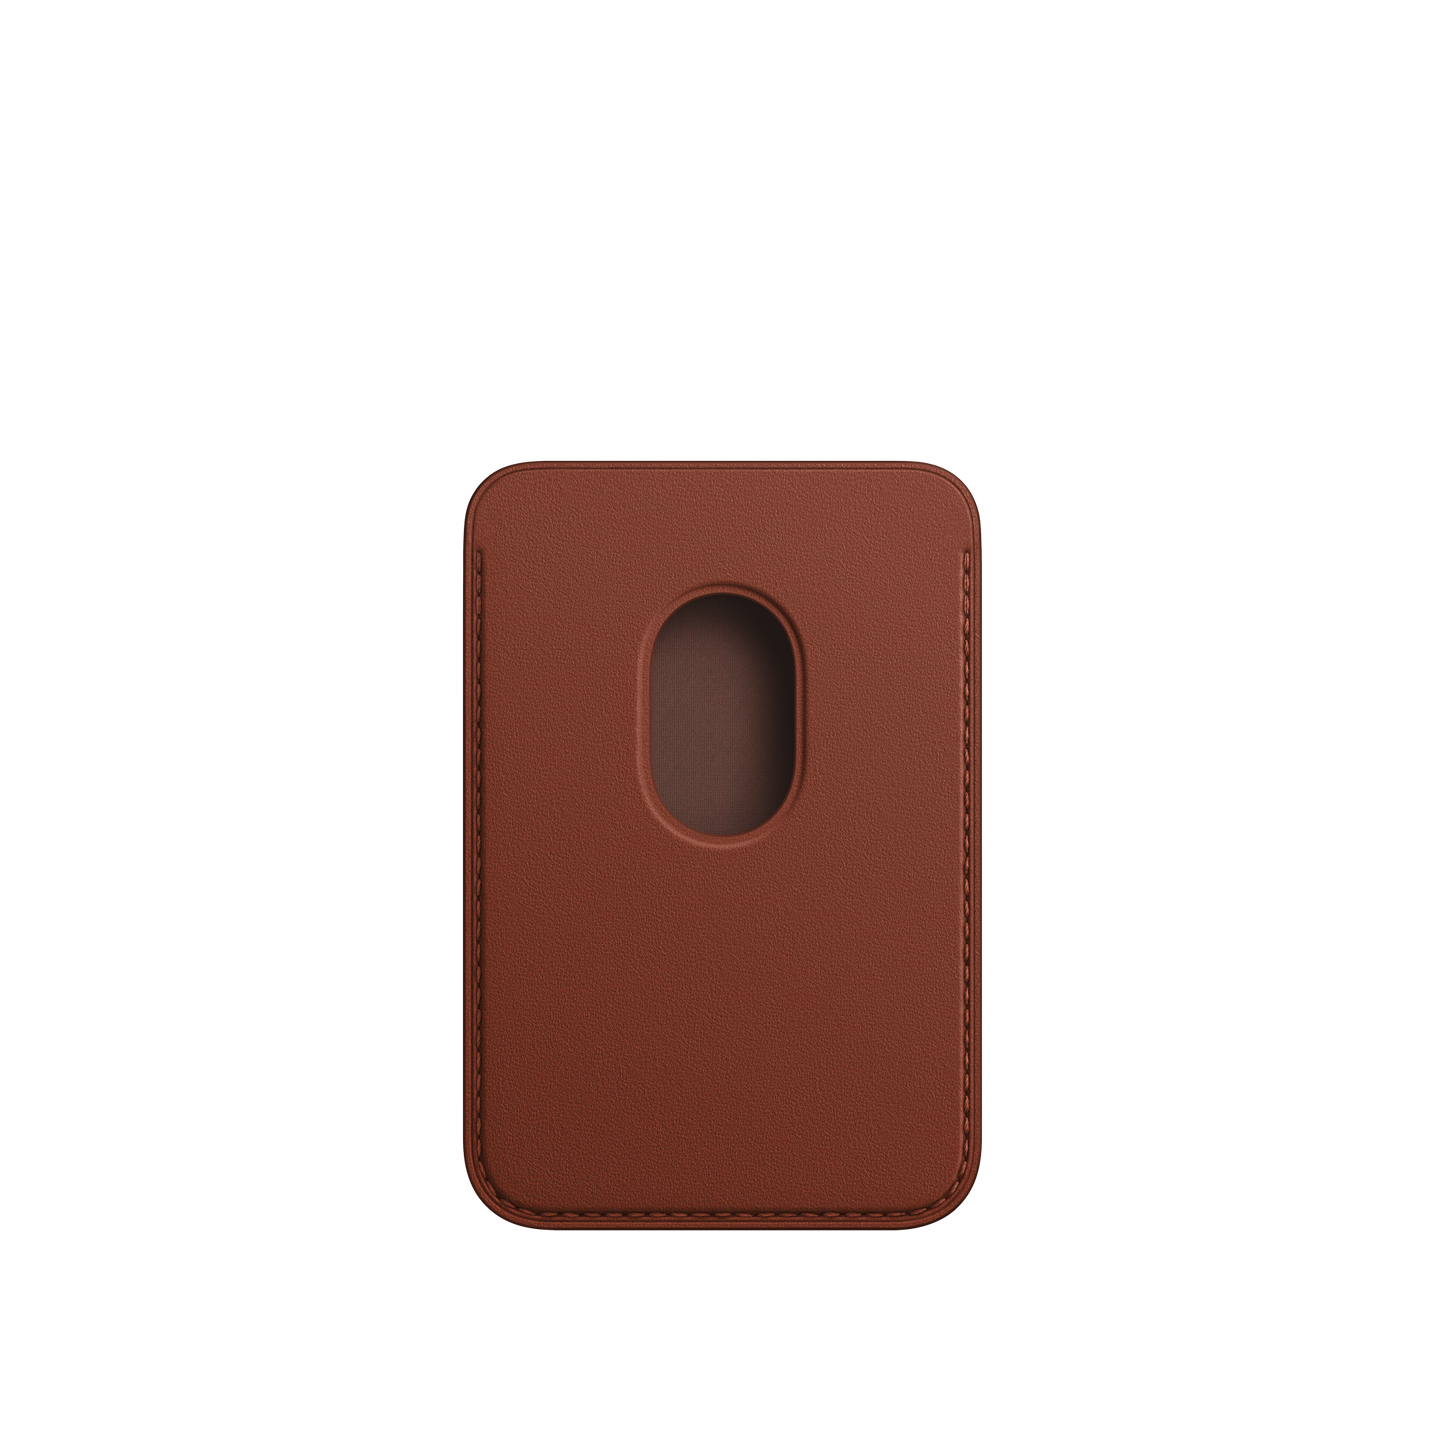 Cartera de piel con MagSafe para el iPhone - Ocre oscuro - Rossellimac